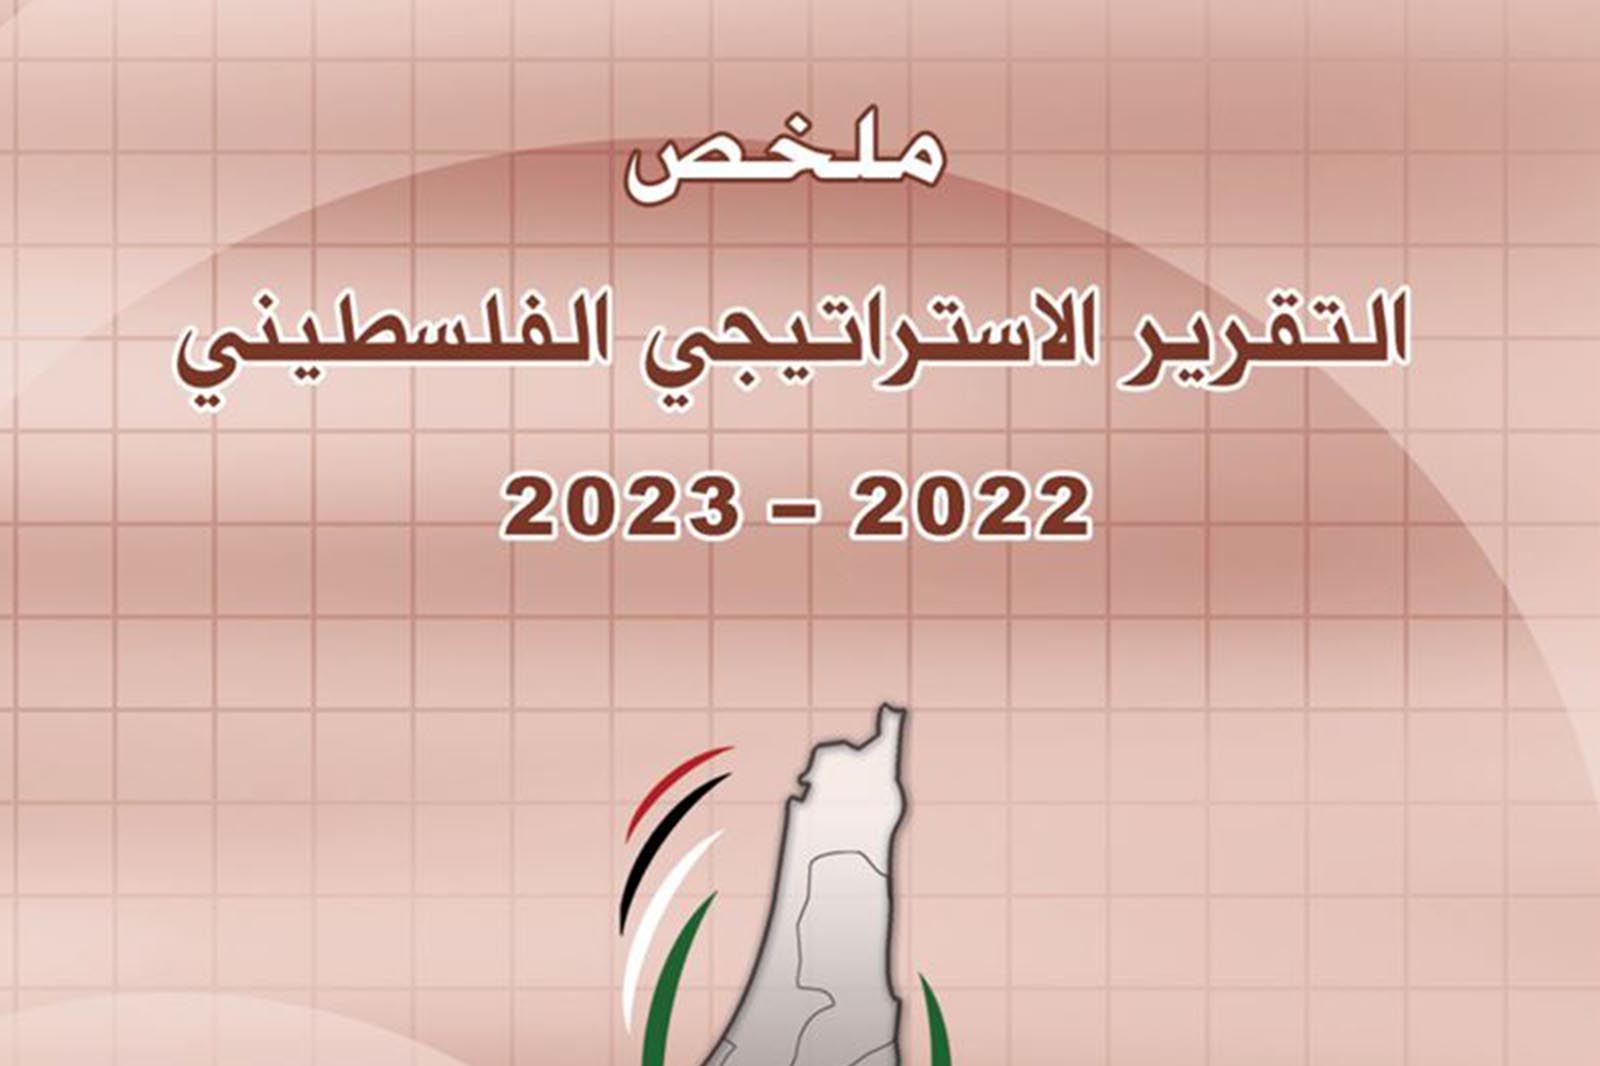 ملخص التقرير الاستراتيجي الفلسطيني 2022-2023